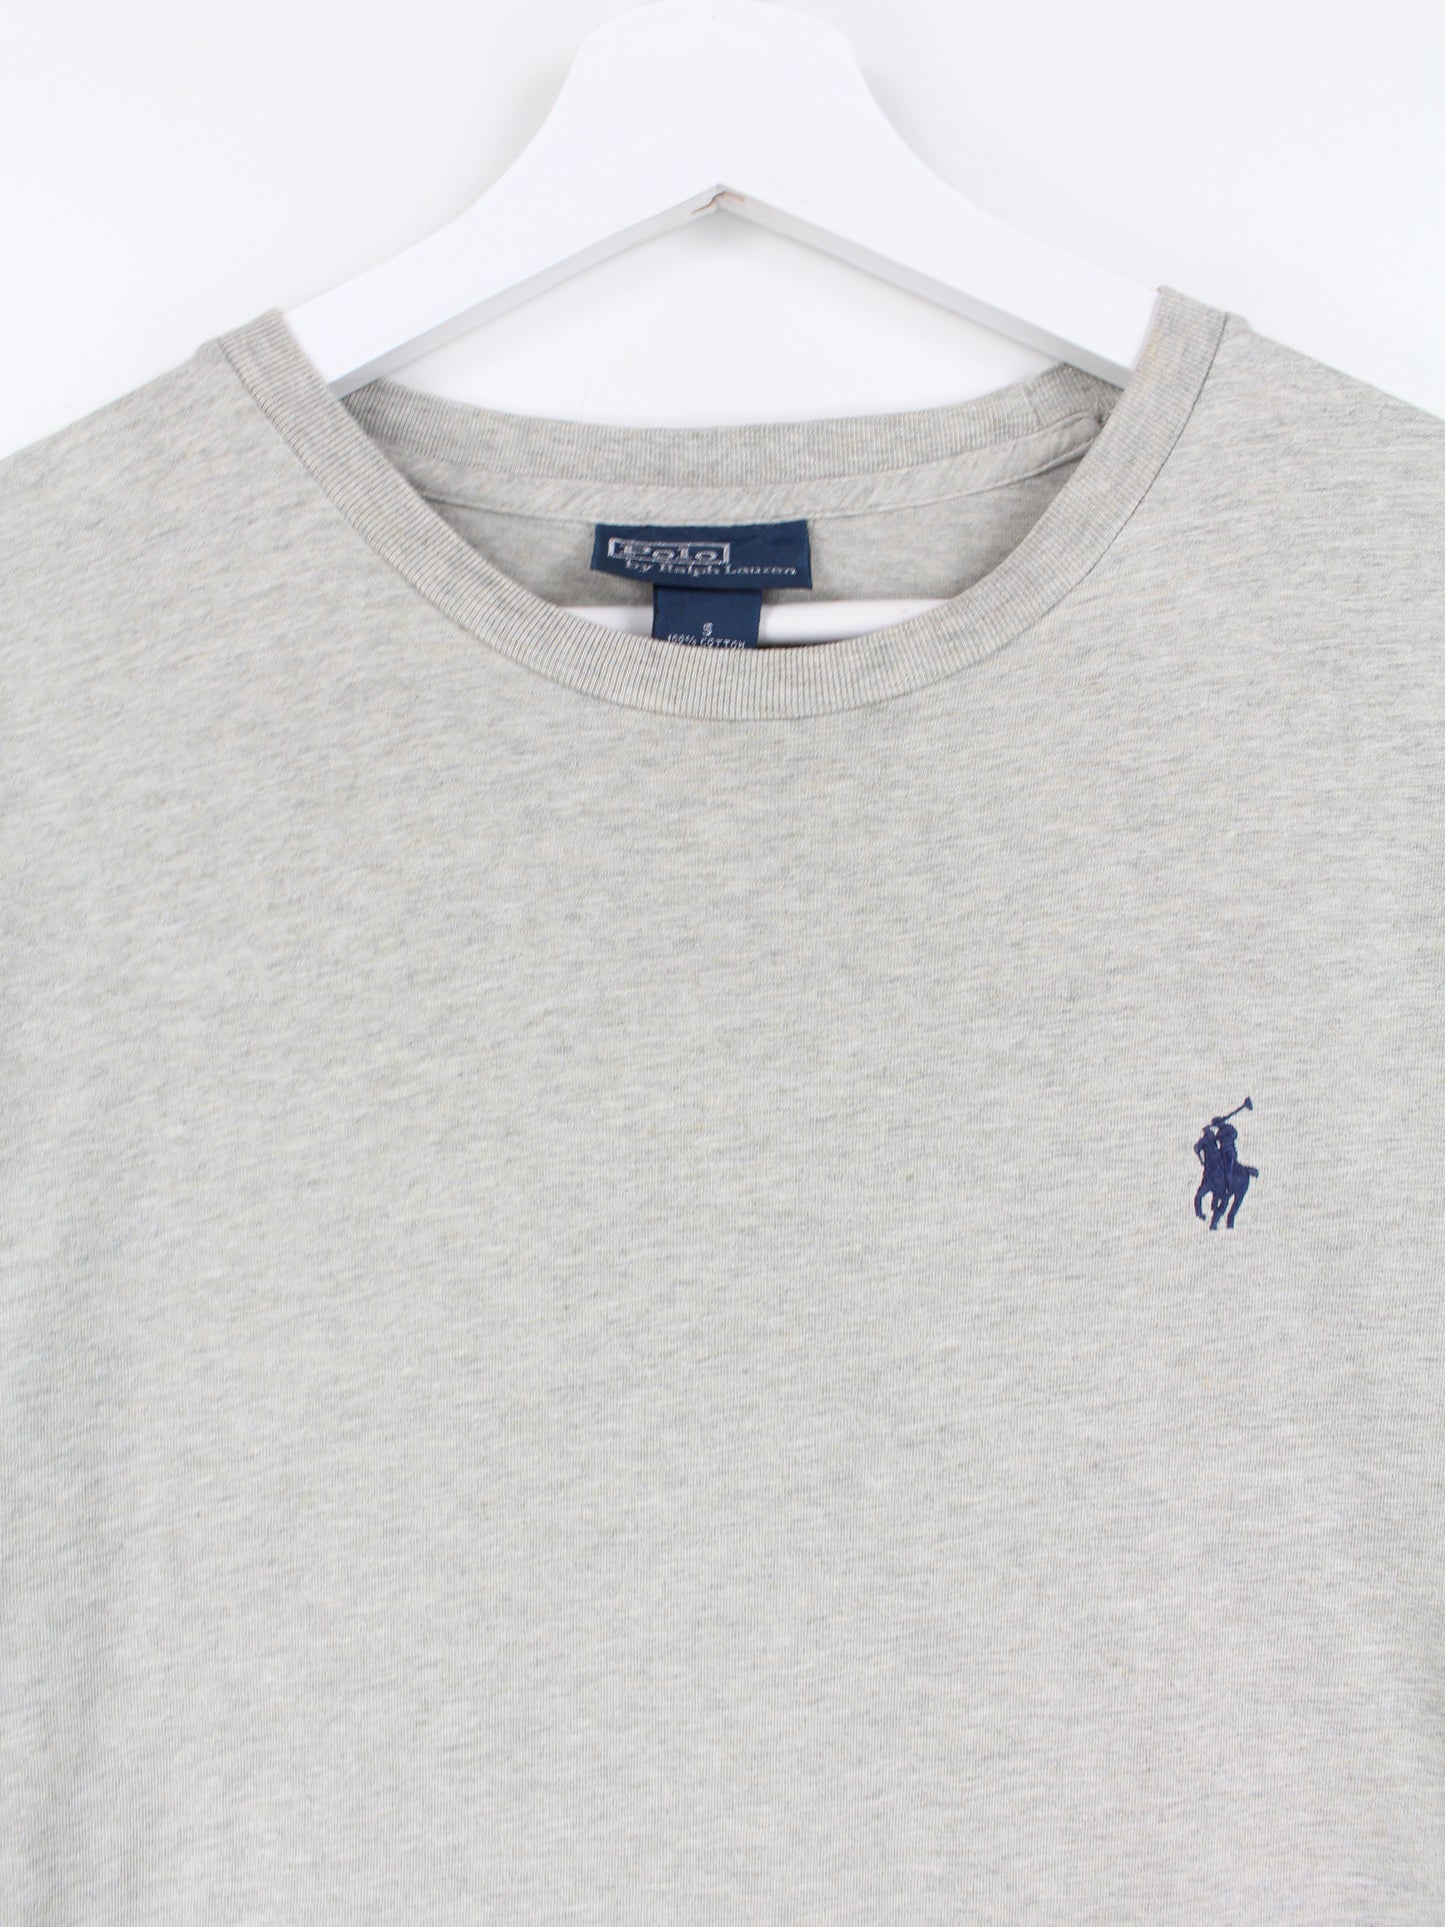 Ralph Lauren T-Shirt Grau S